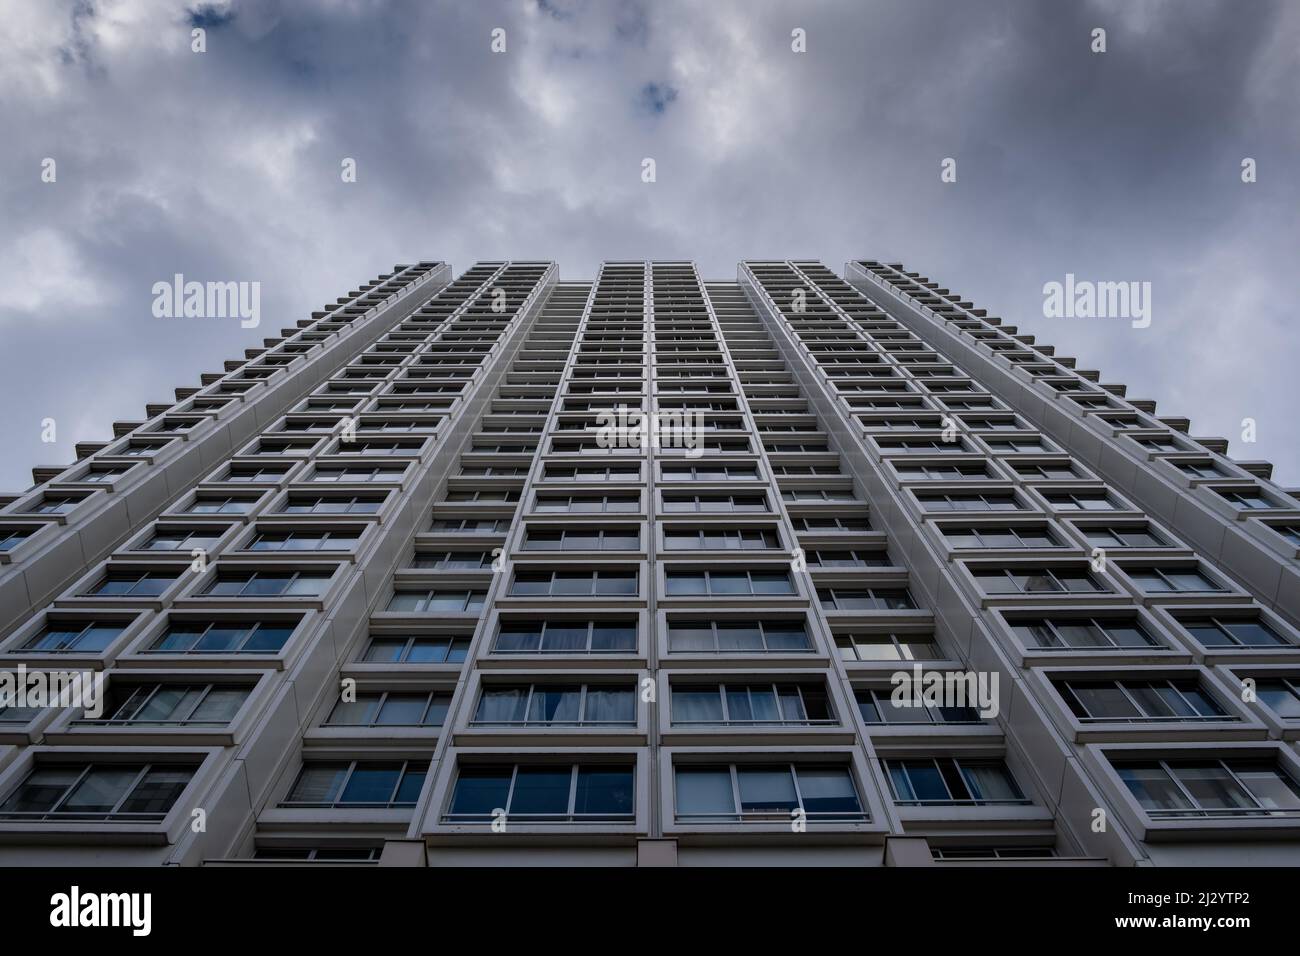 Façade de bâtiment de haute hauteur à Paris avec ciel nuageux Banque D'Images